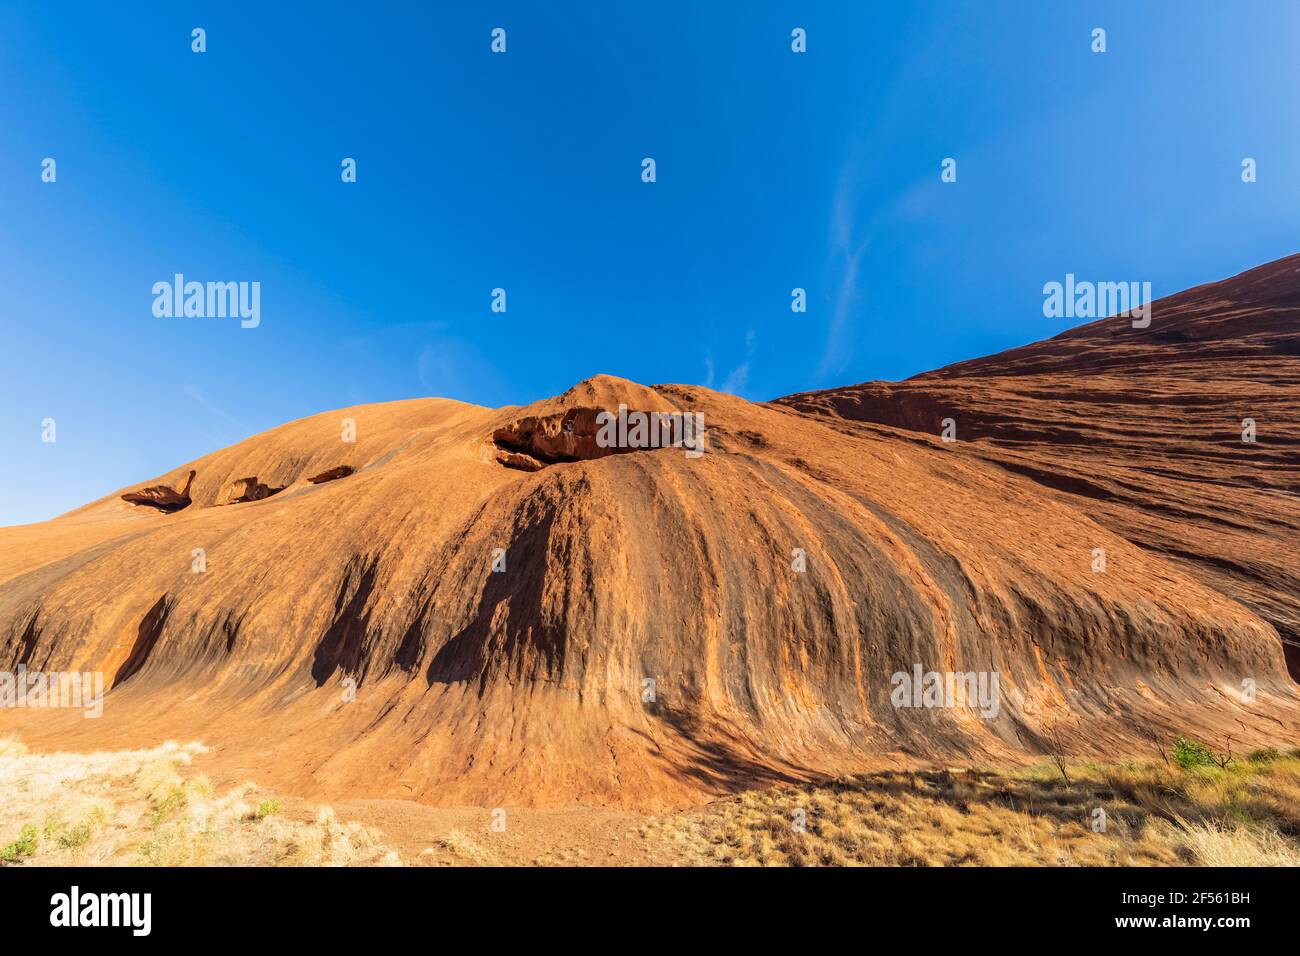 Australie, territoire du Nord, paysage désertique du parc national d'Uluru Kata Tjuta Banque D'Images